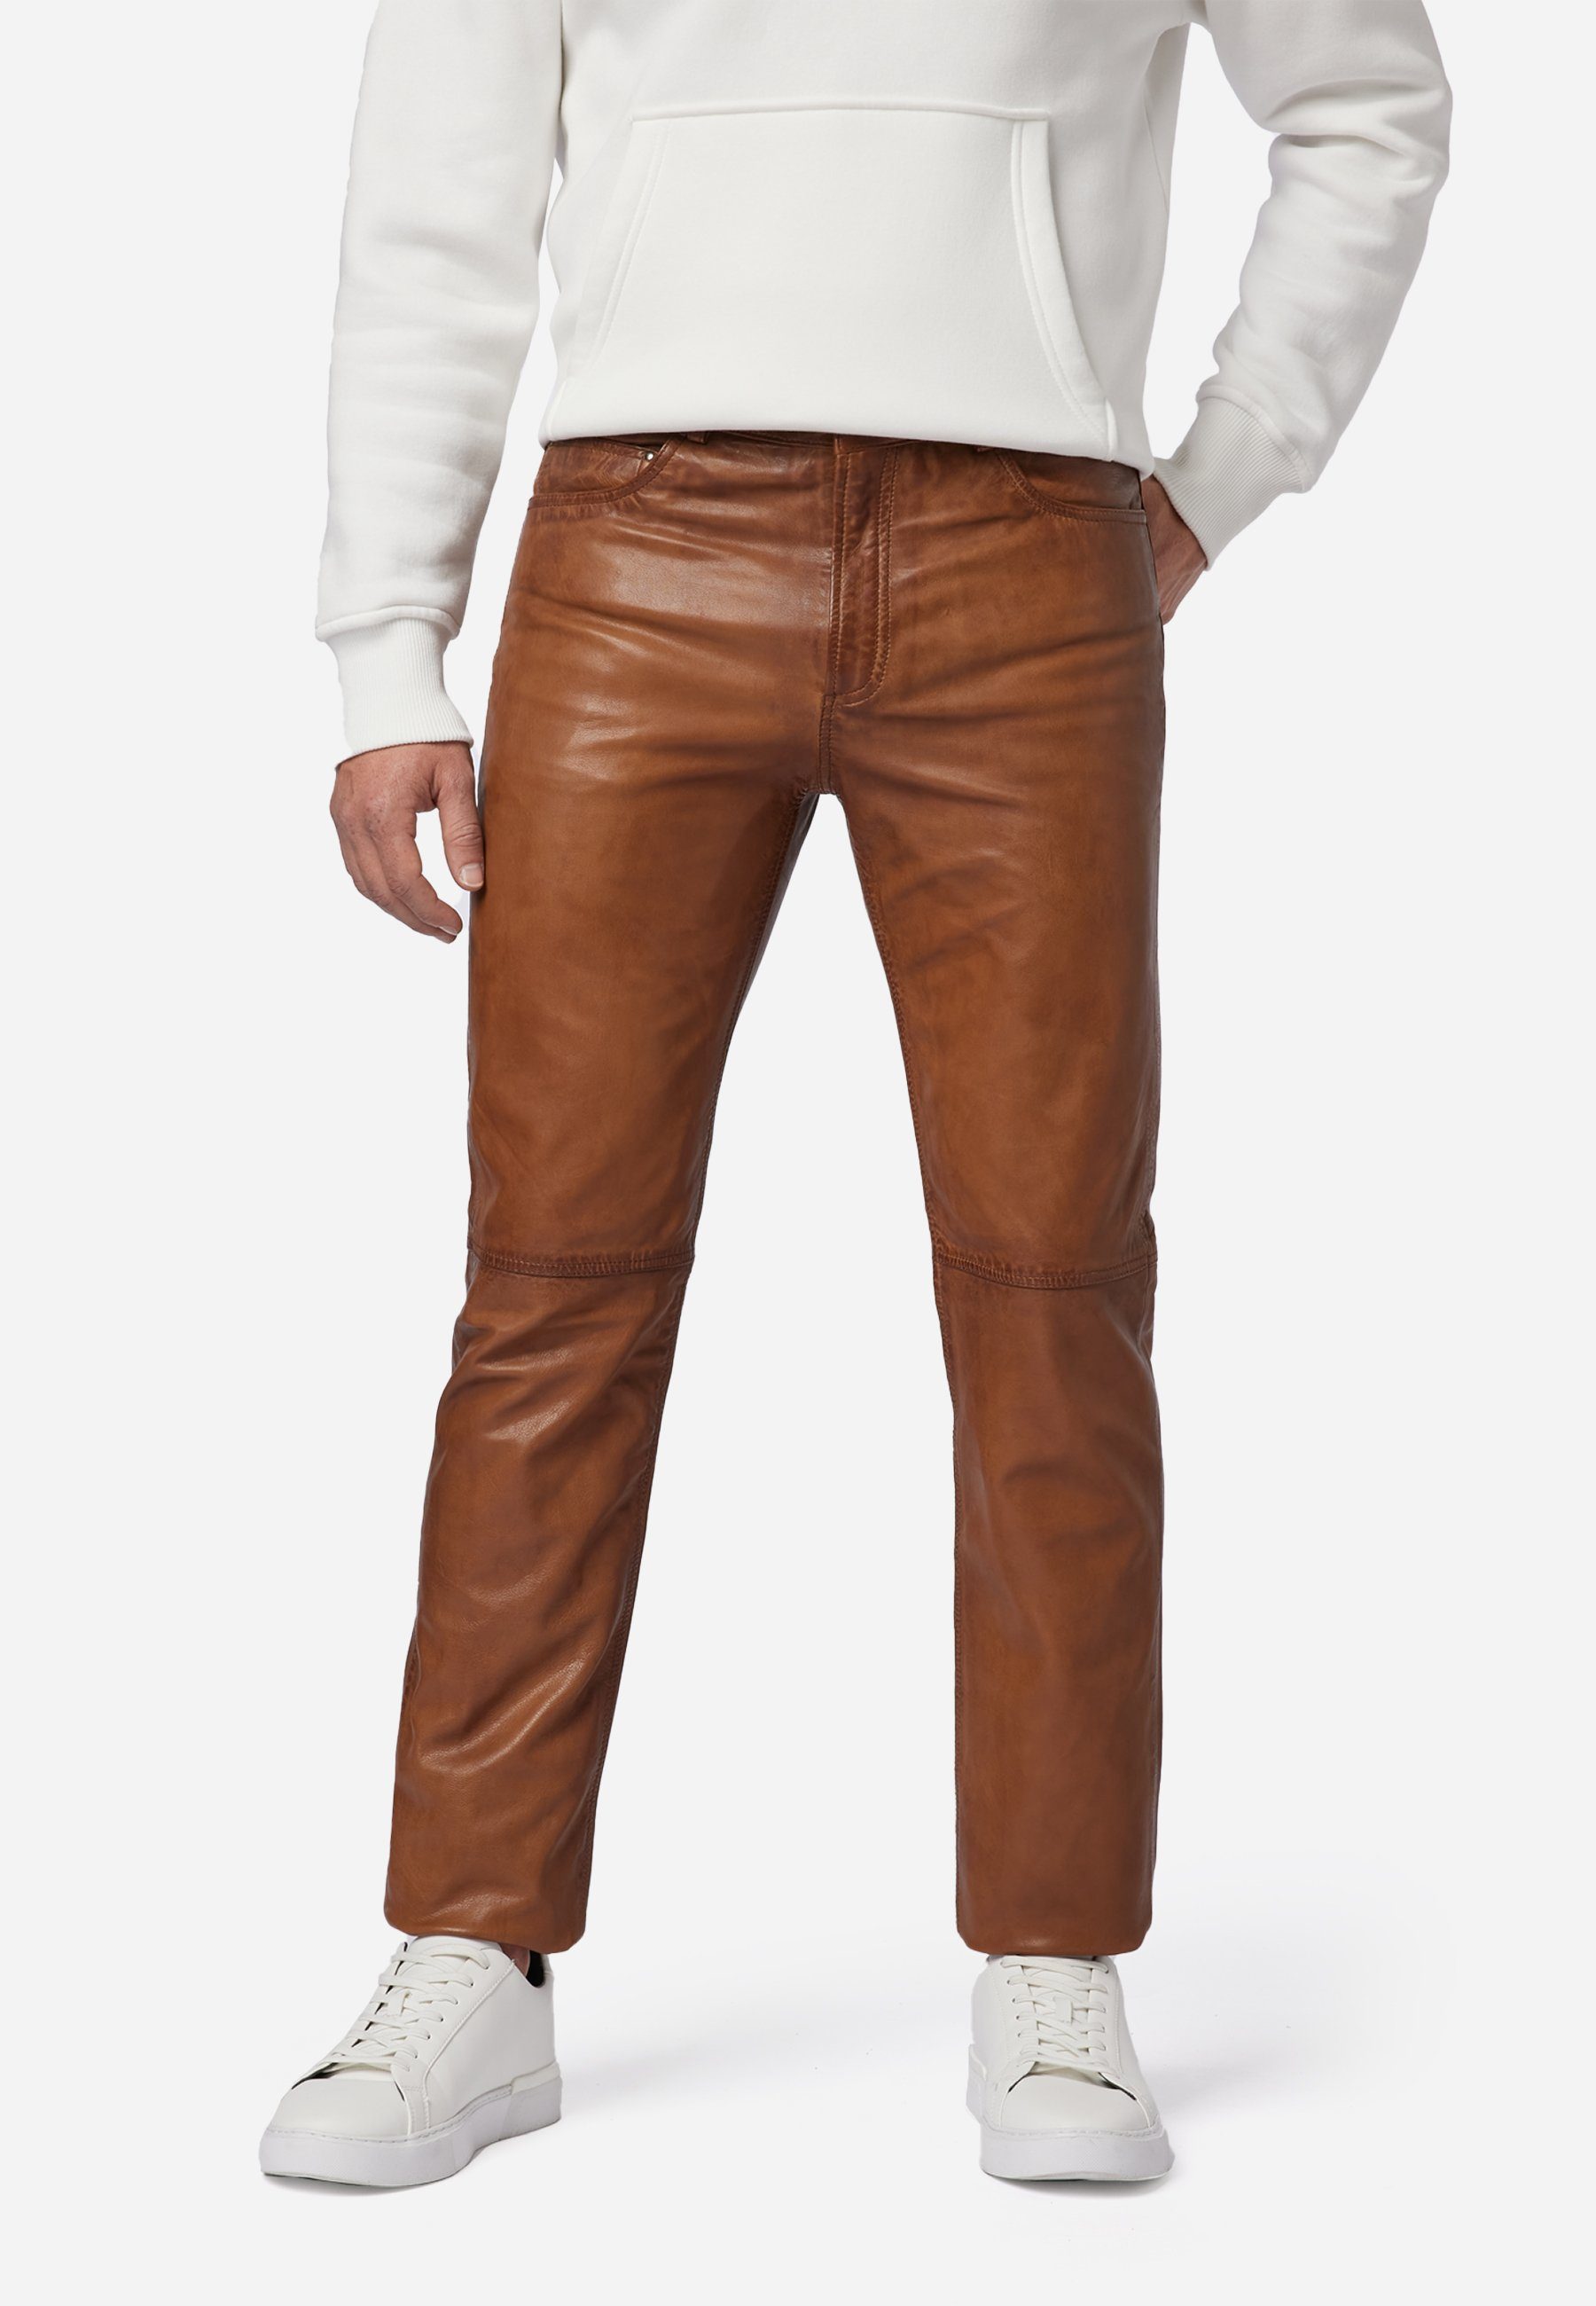 Trant Jeans-Optik Pant Leder; Lederhose Cognac RICANO Lamm-Nappa Hochwertiges 5-Pocket